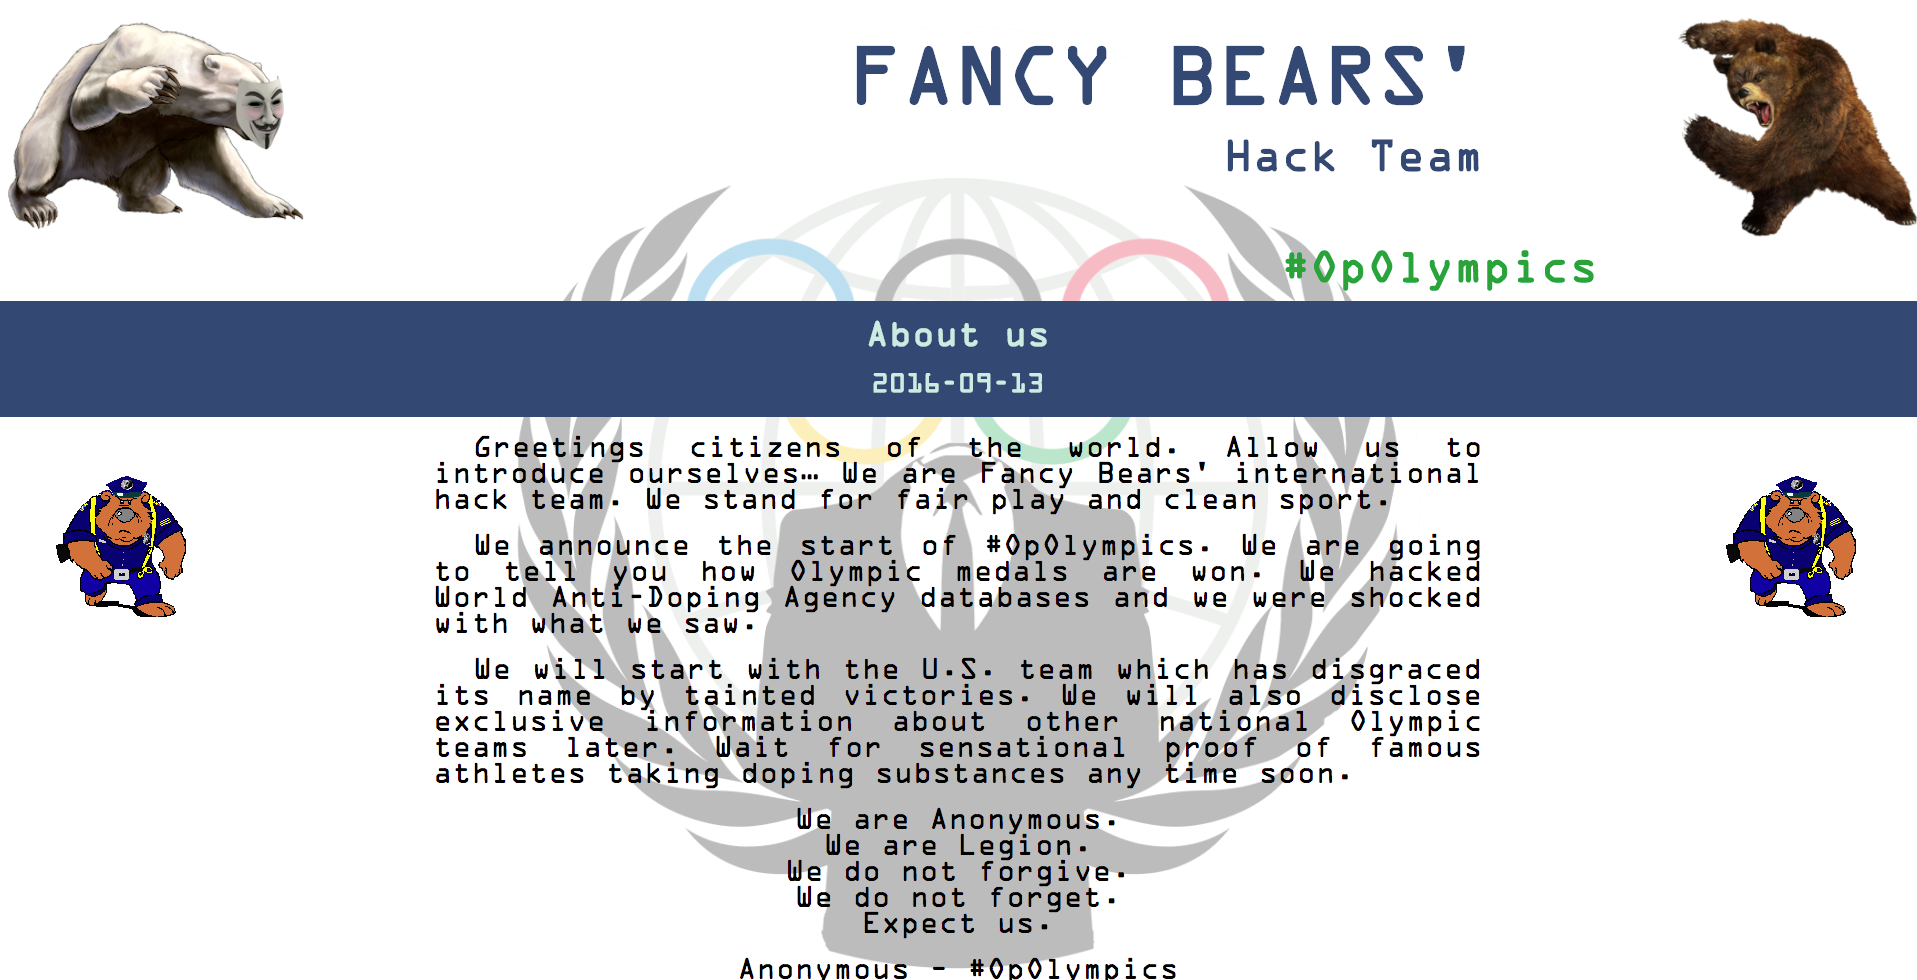 Fancy Bears’ Hack Team website.